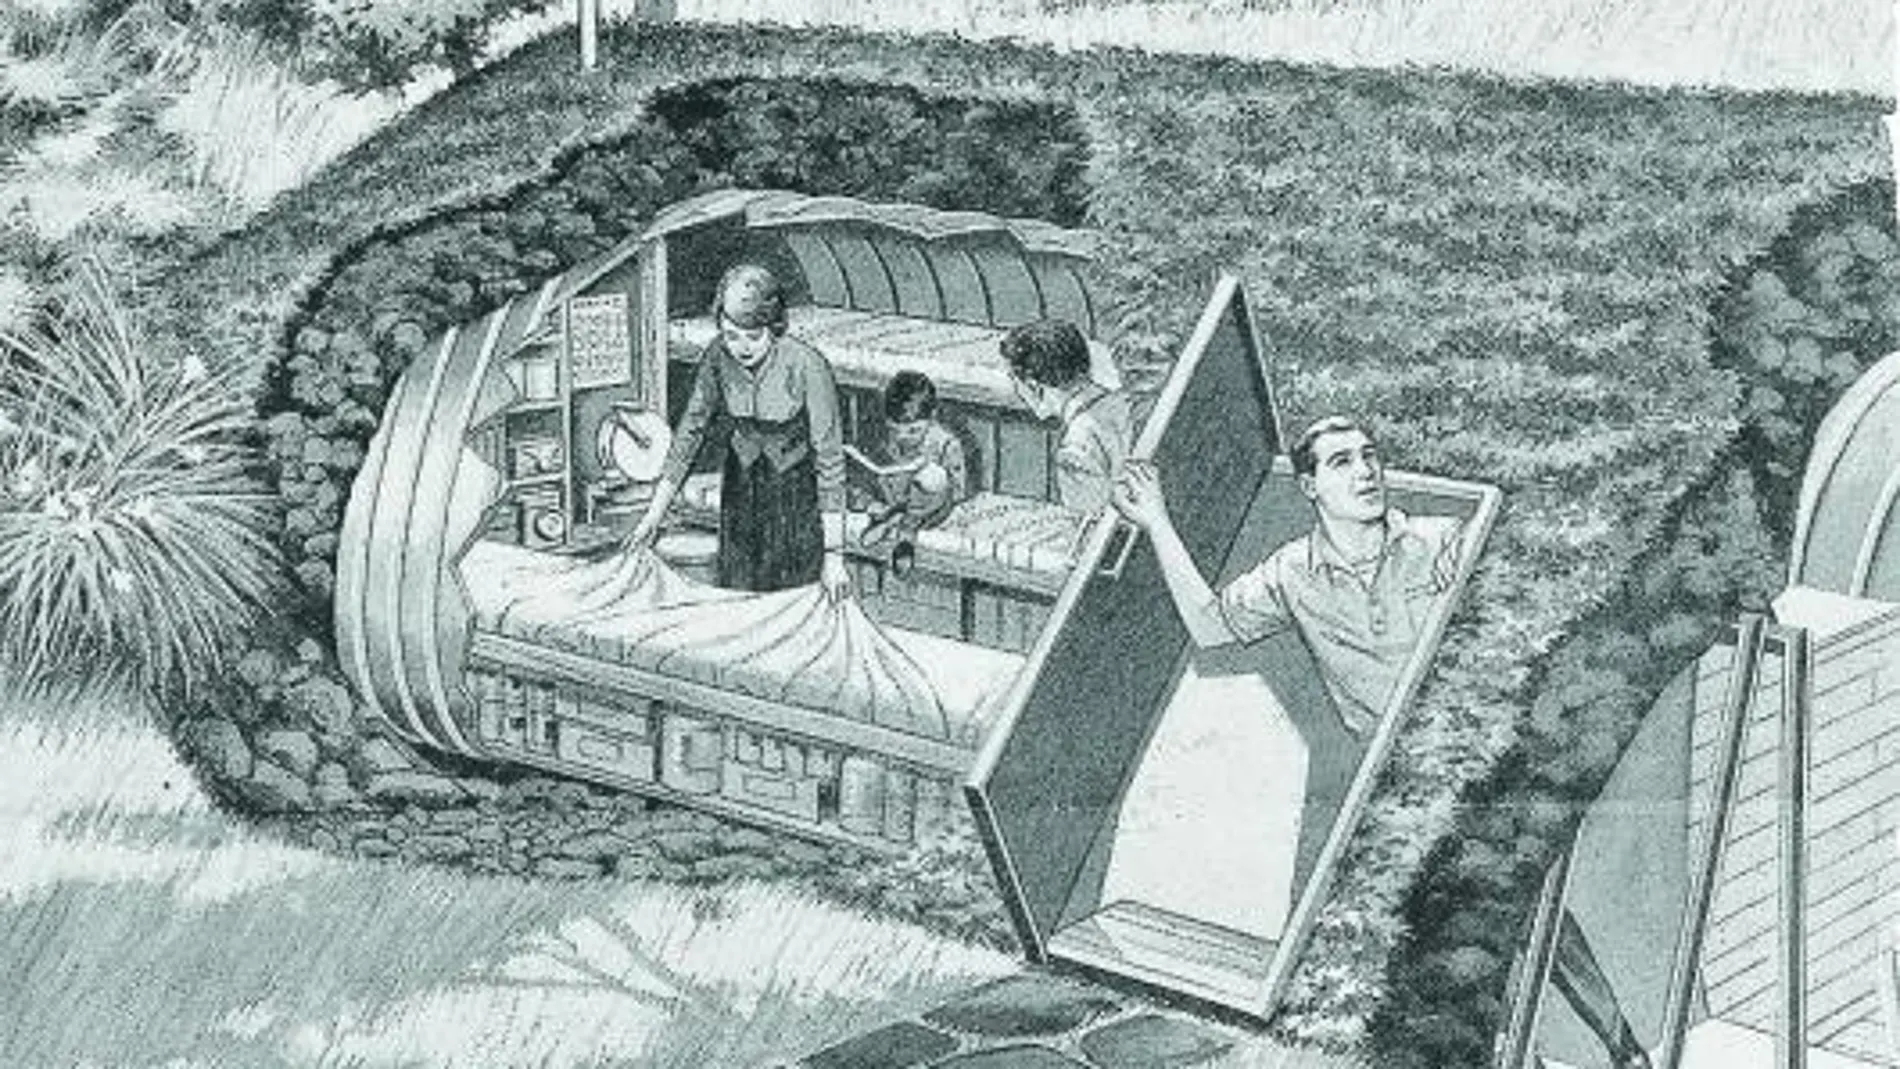 Un dibujo publicado en la prensa de los años 50 imagina un mundo feliz protegido con un refugio familiar